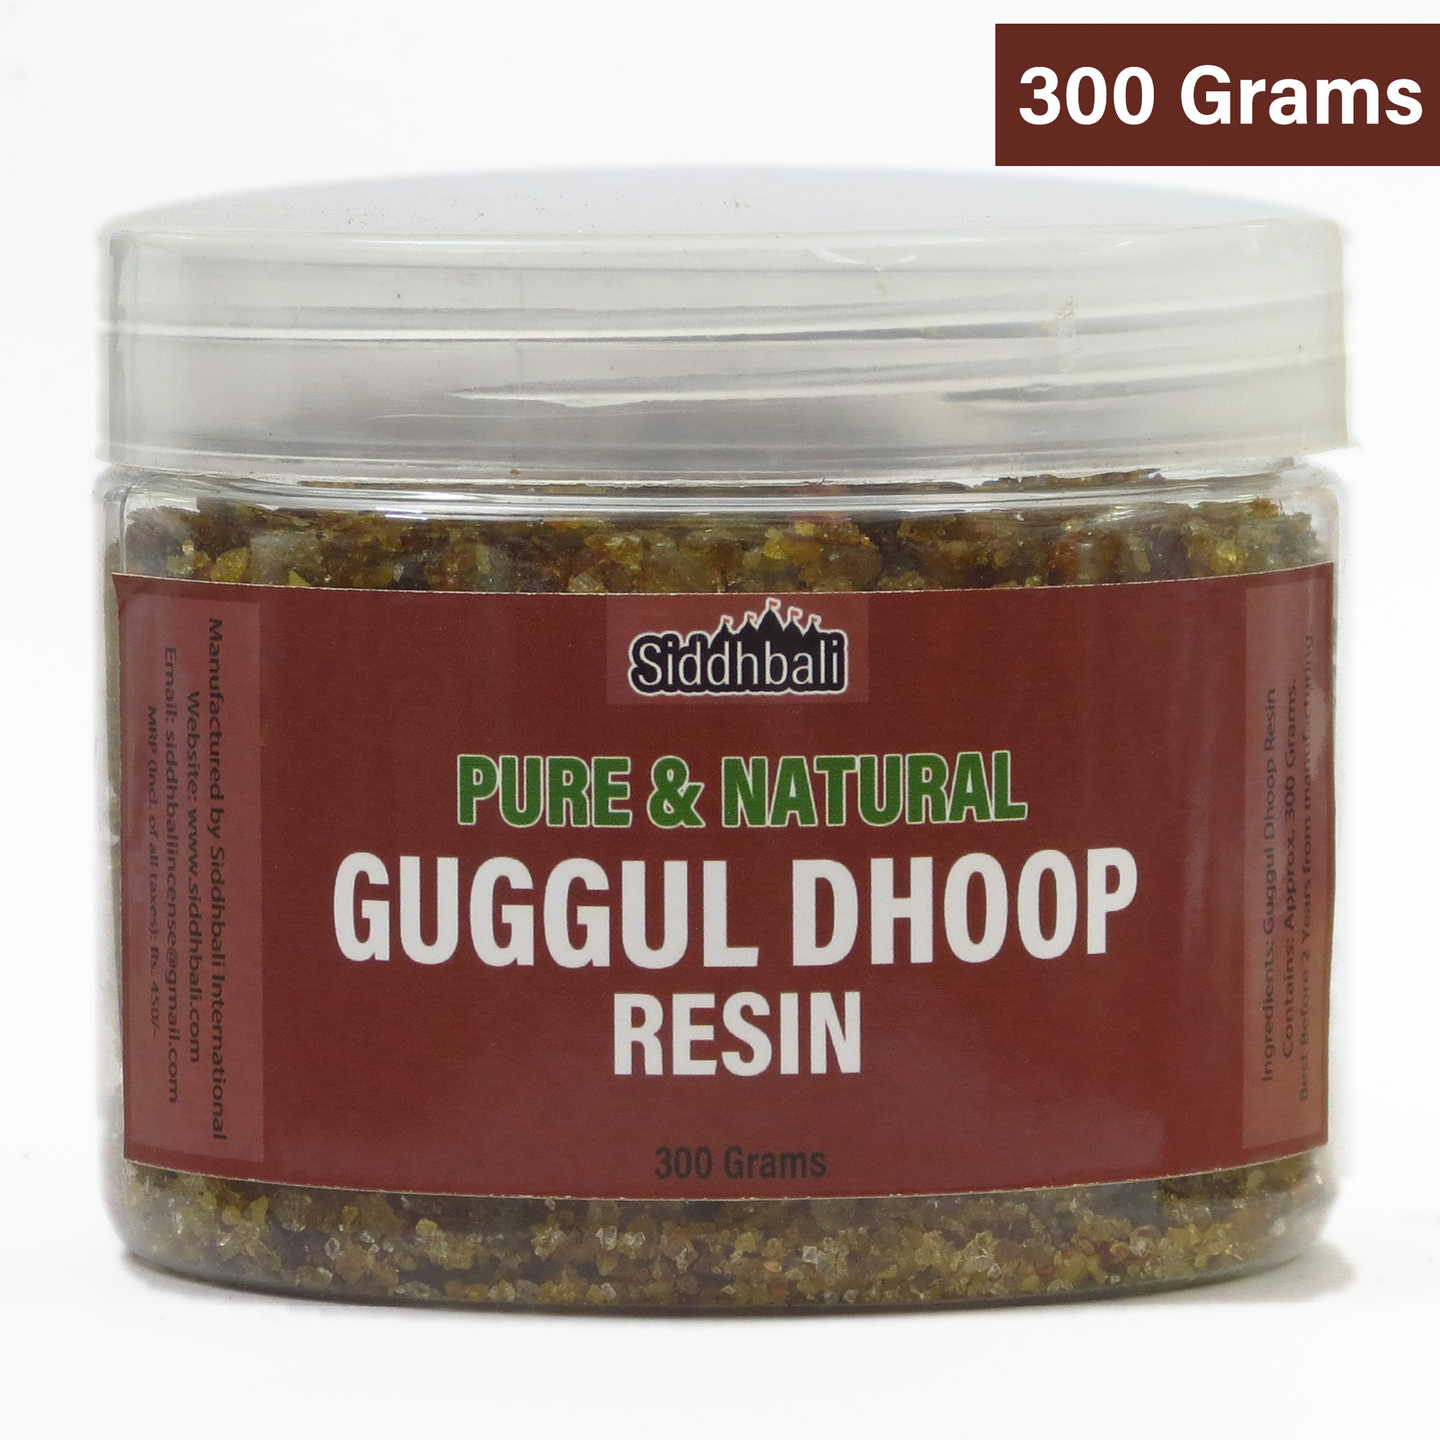 Guggul Dhoop Resin for Pooja - 300 grams